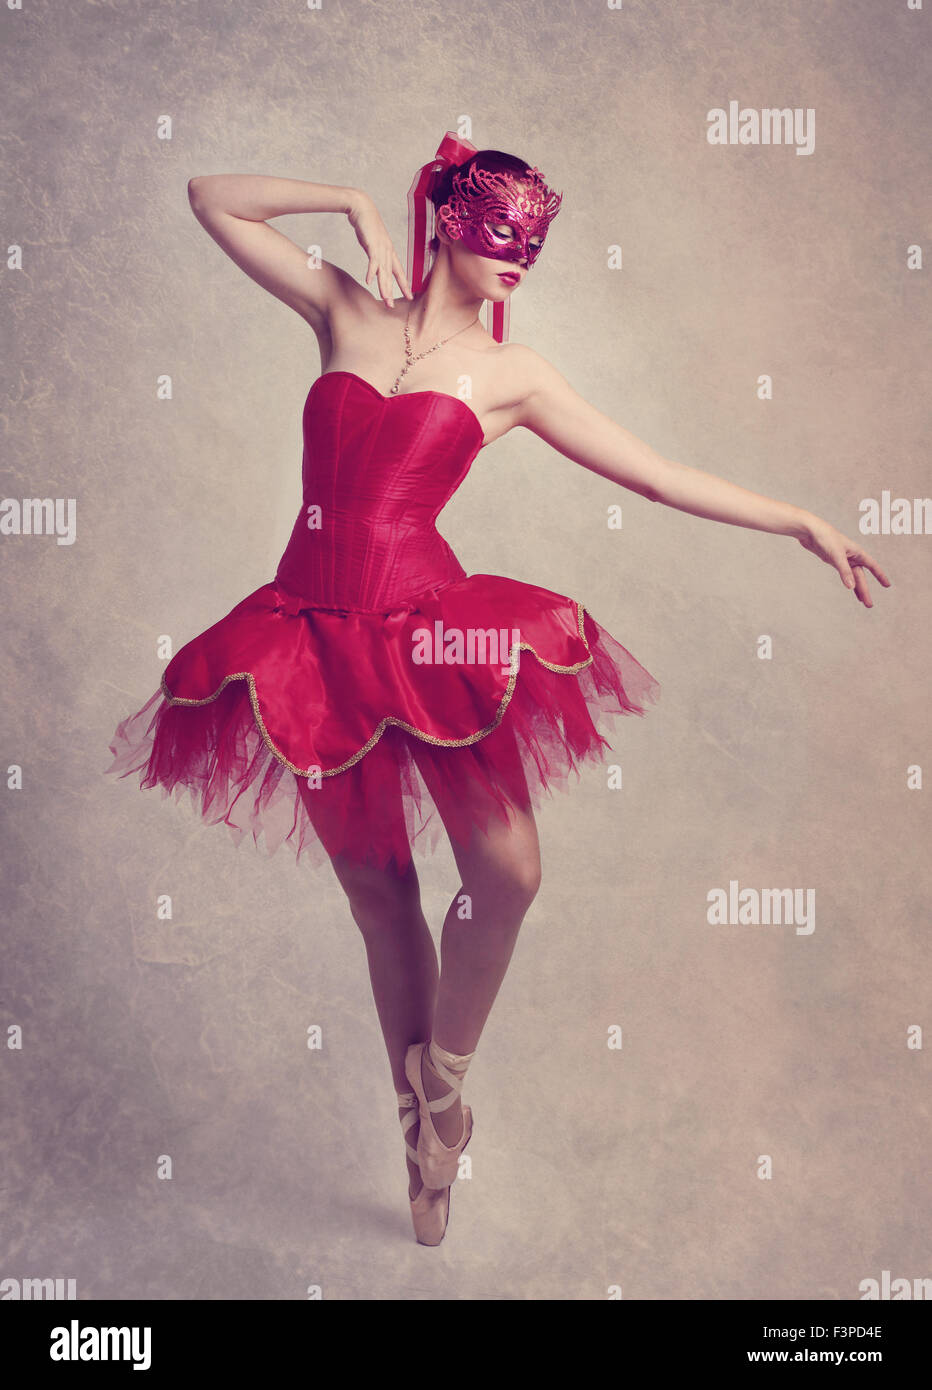 Une gracieuse ballerine danser sur le point de porter un tutu rouge et un  masque rouge Photo Stock - Alamy